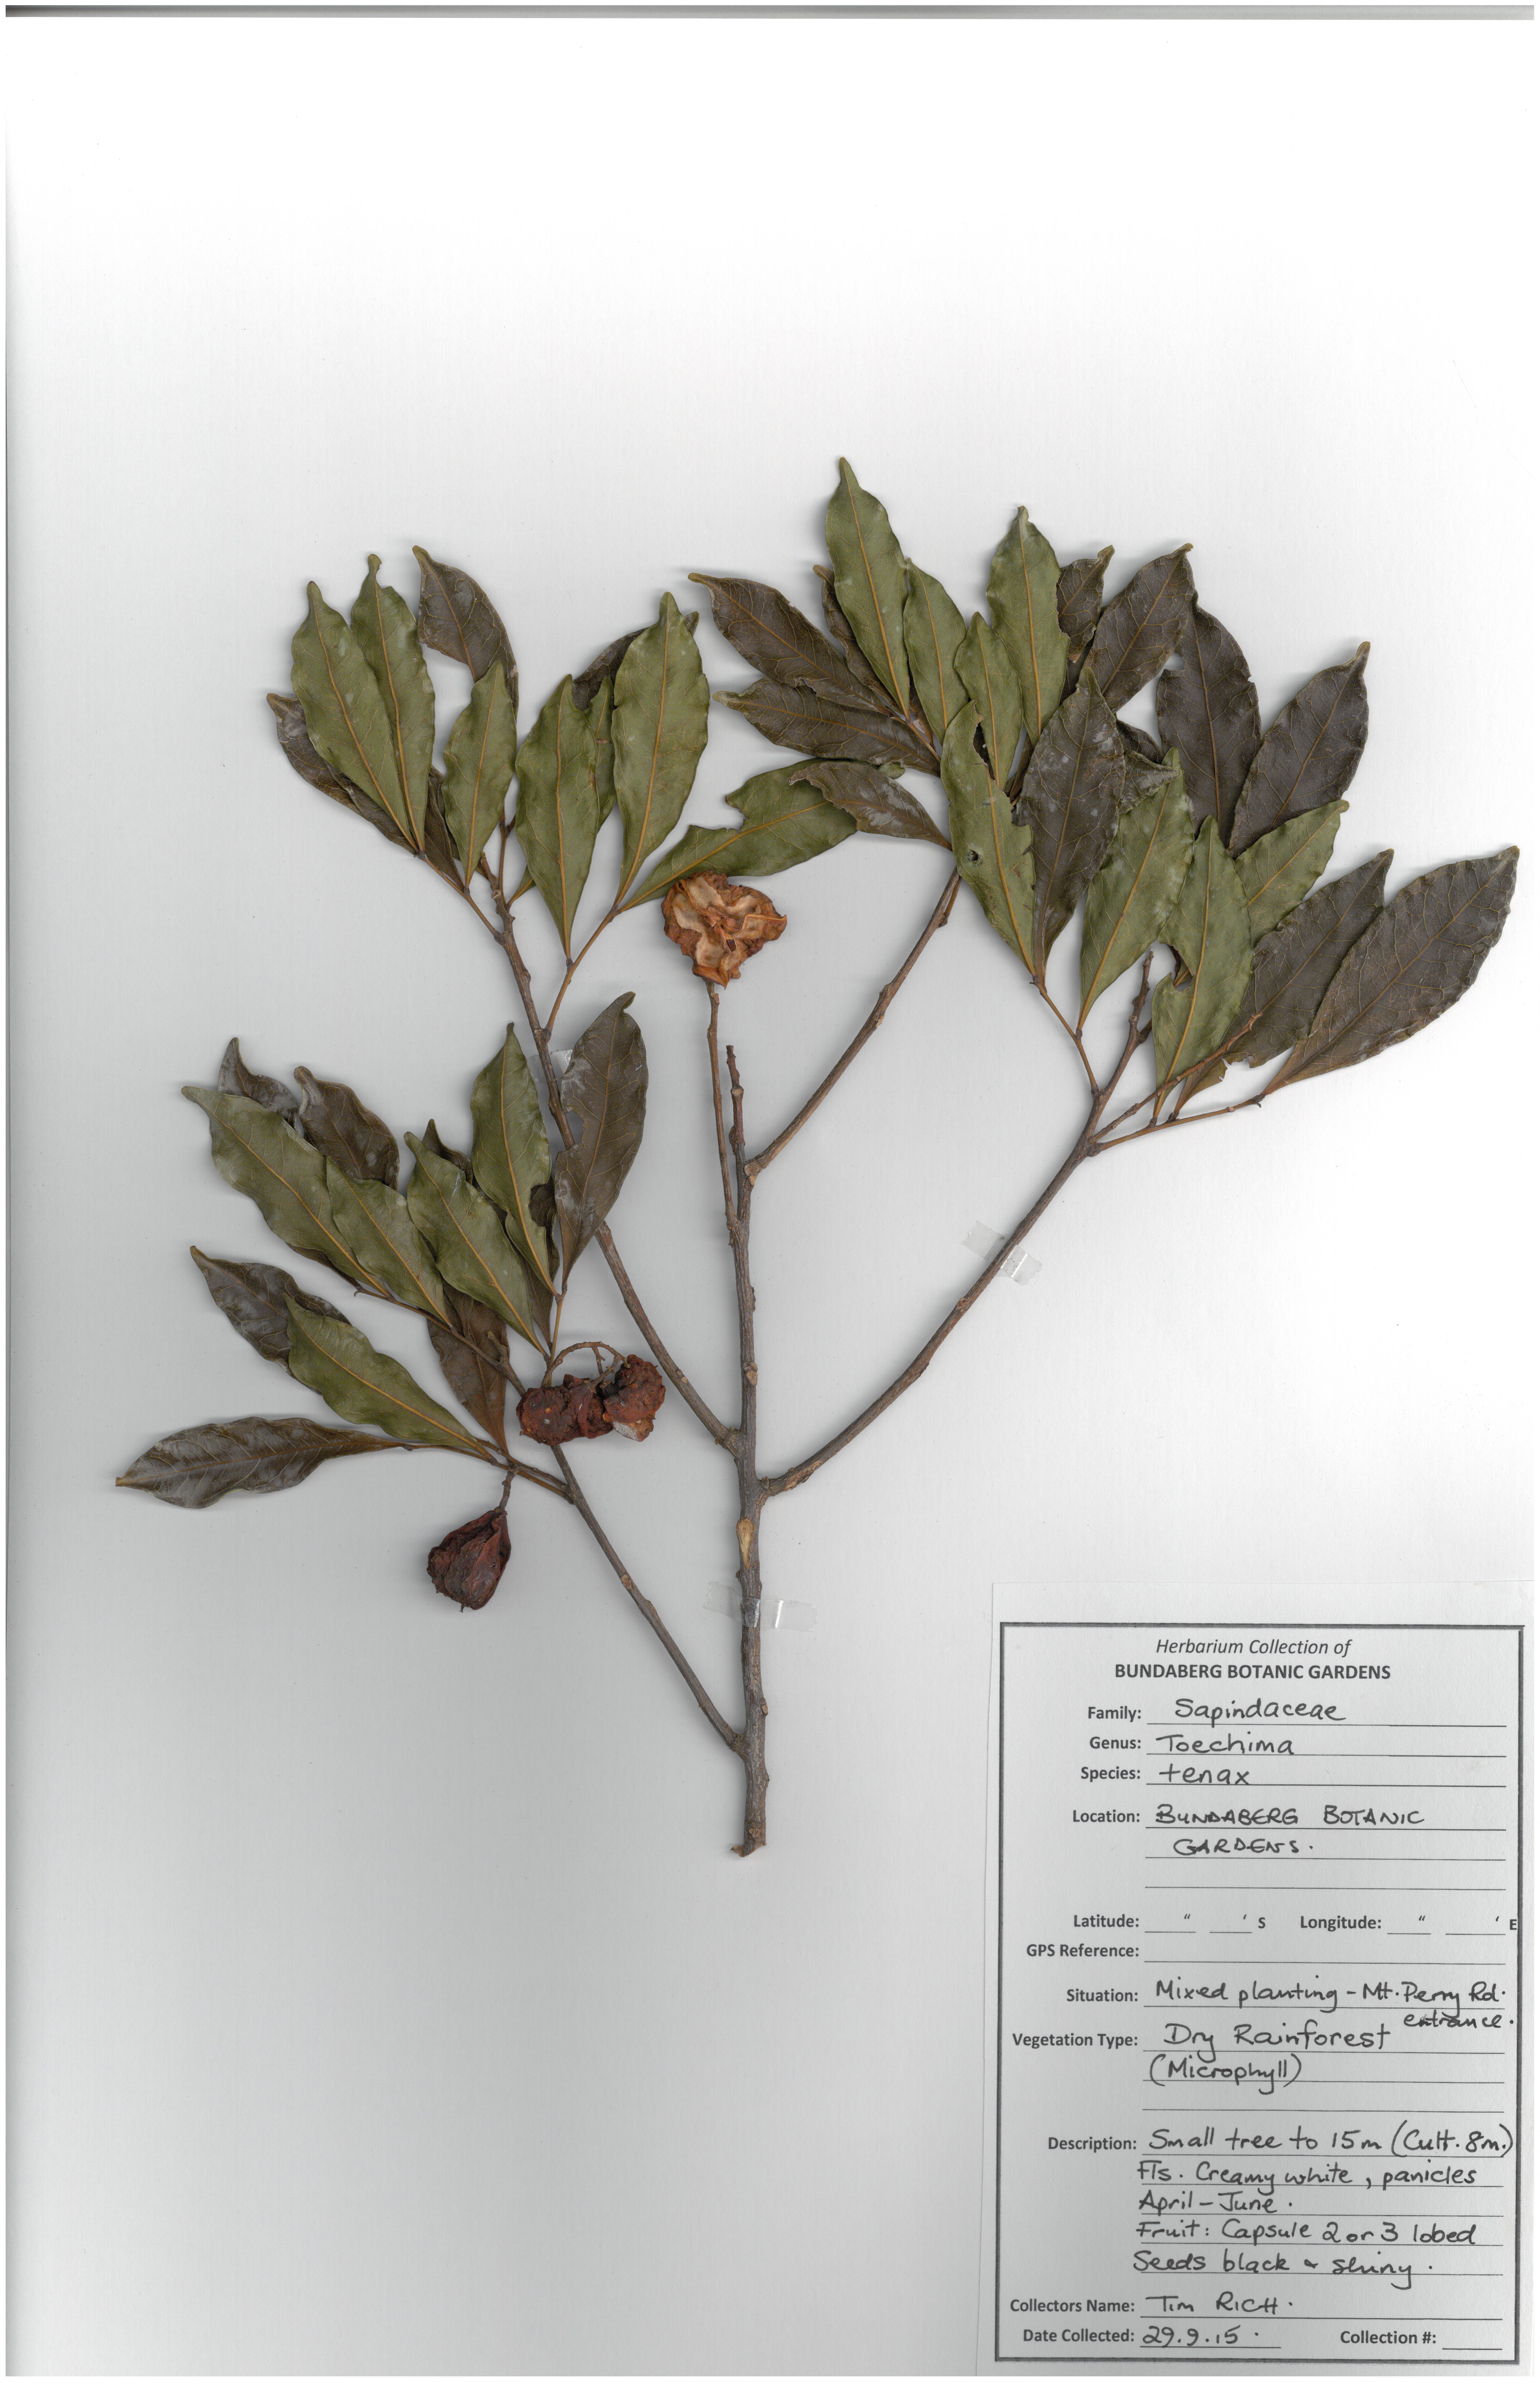 Sapindaceae toechima tenax